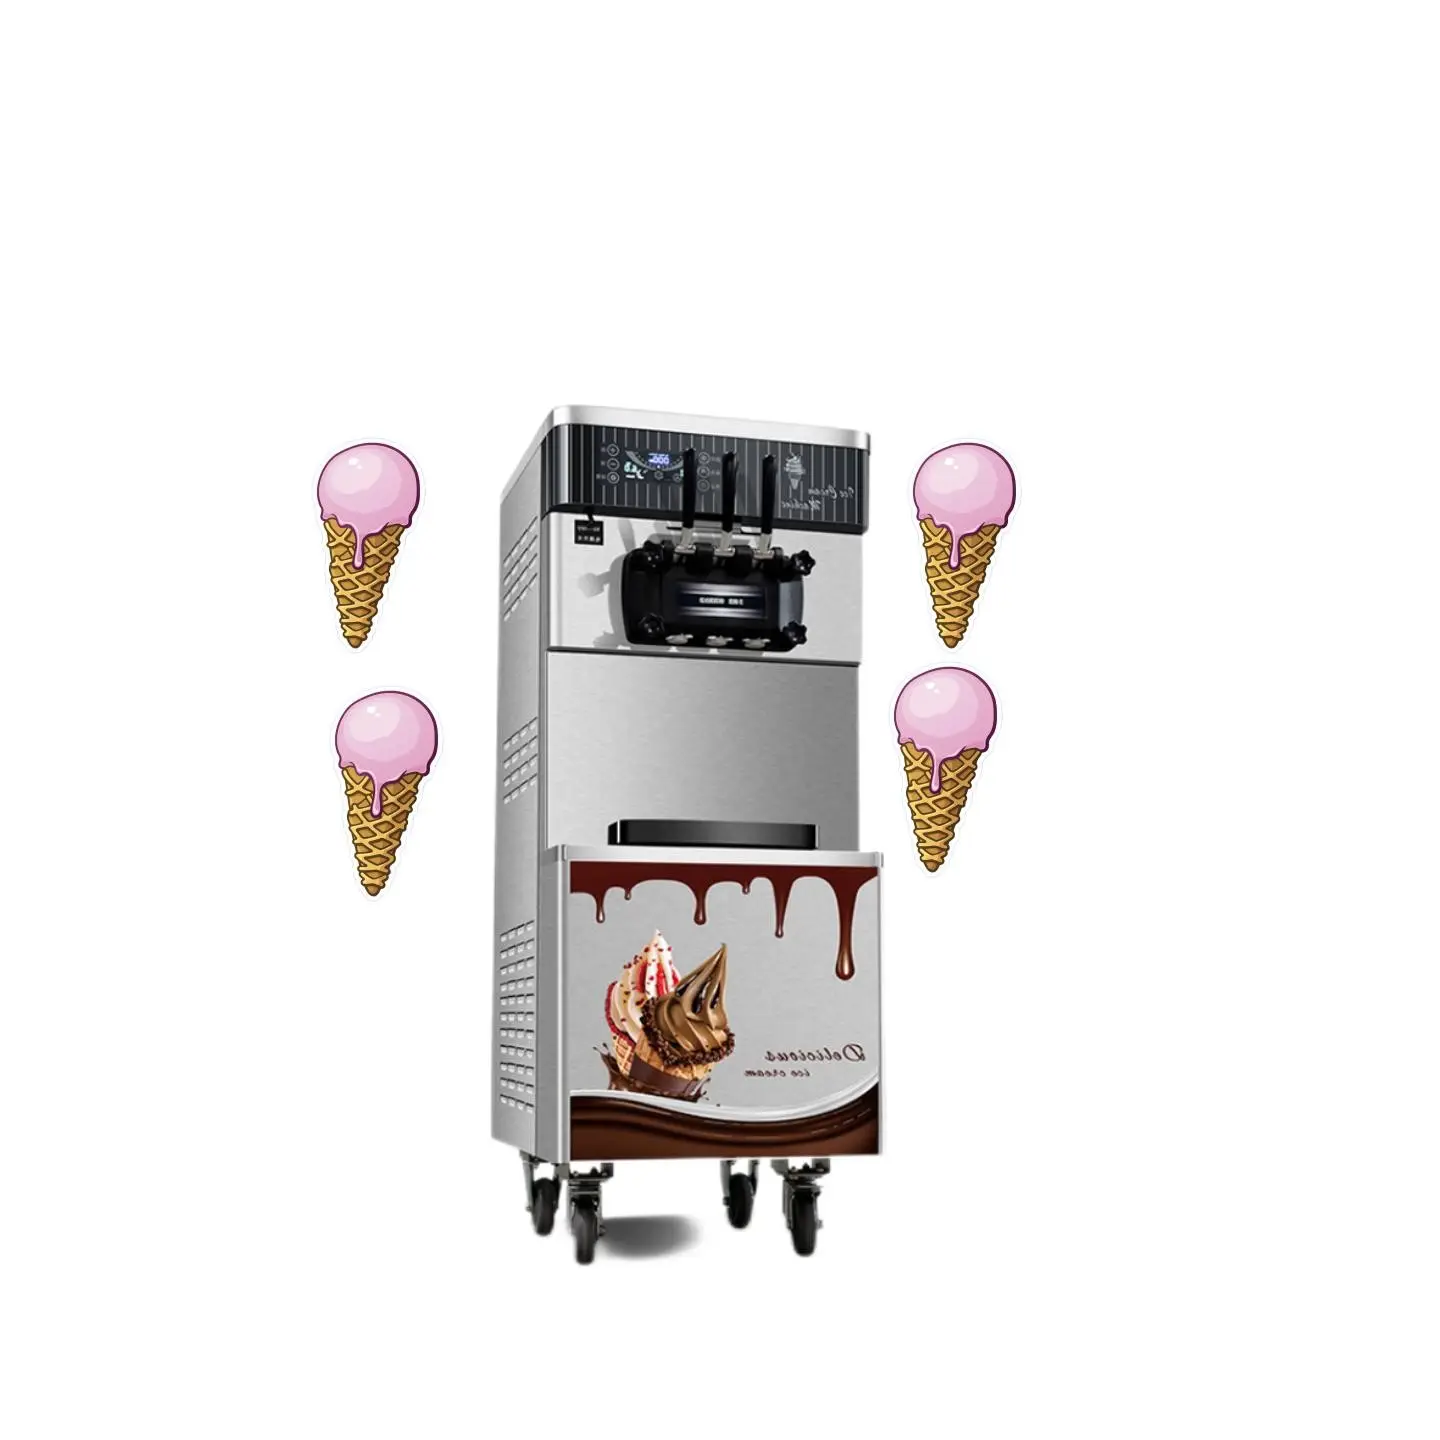 アイスクリーム製造機多機能3フレーバーソフトマシンアイスクリームドリンク用高品質商用モード